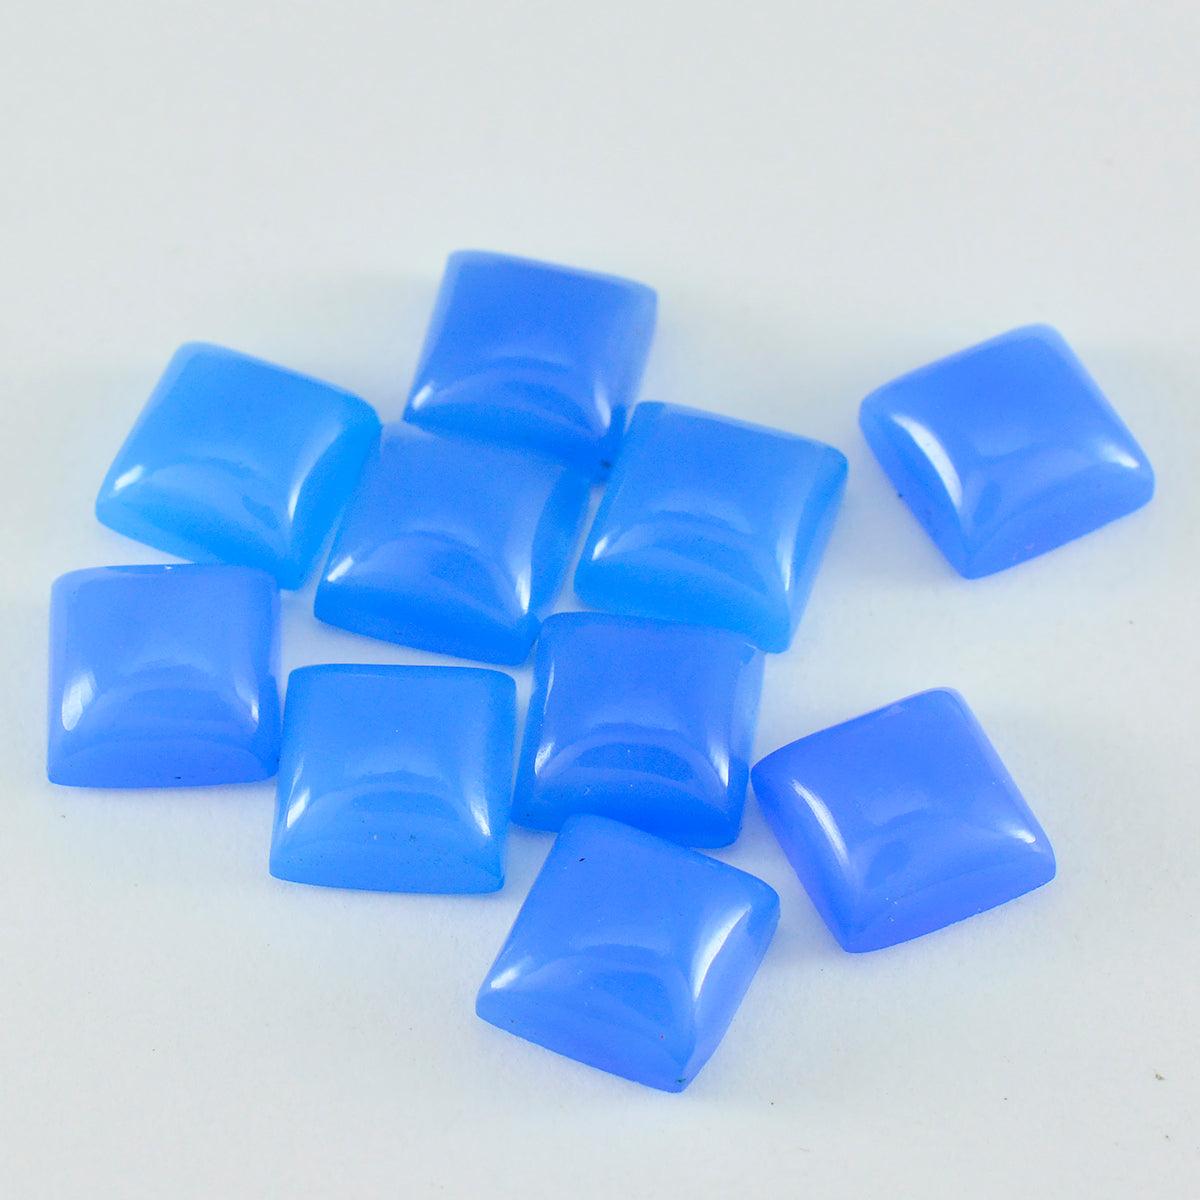 riyogems 1 шт. синий халцедон кабошон 6x6 мм квадратной формы красивый качественный драгоценный камень